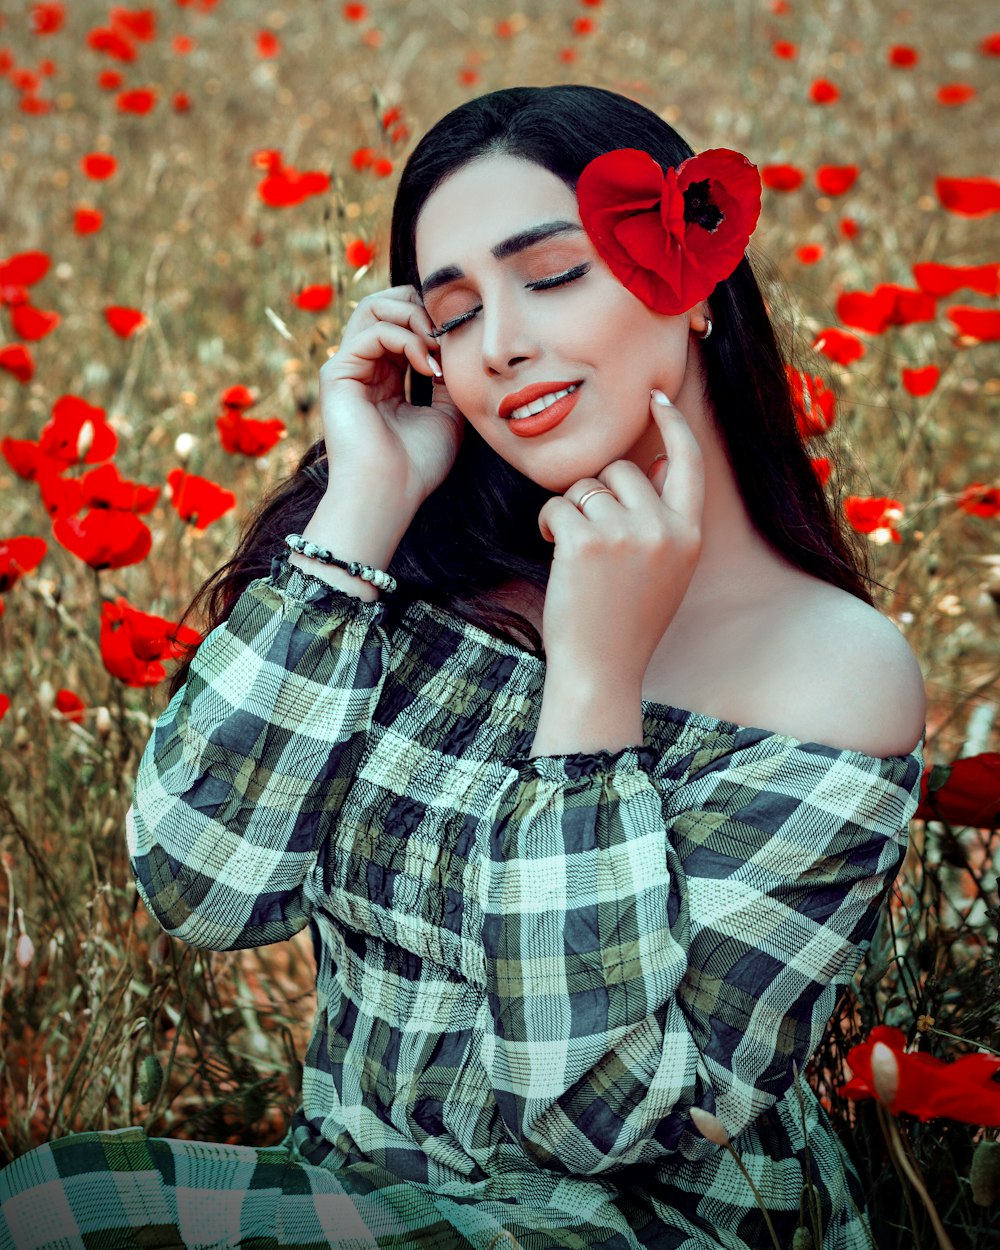 Une femme assise dans un champ de fleurs rouges